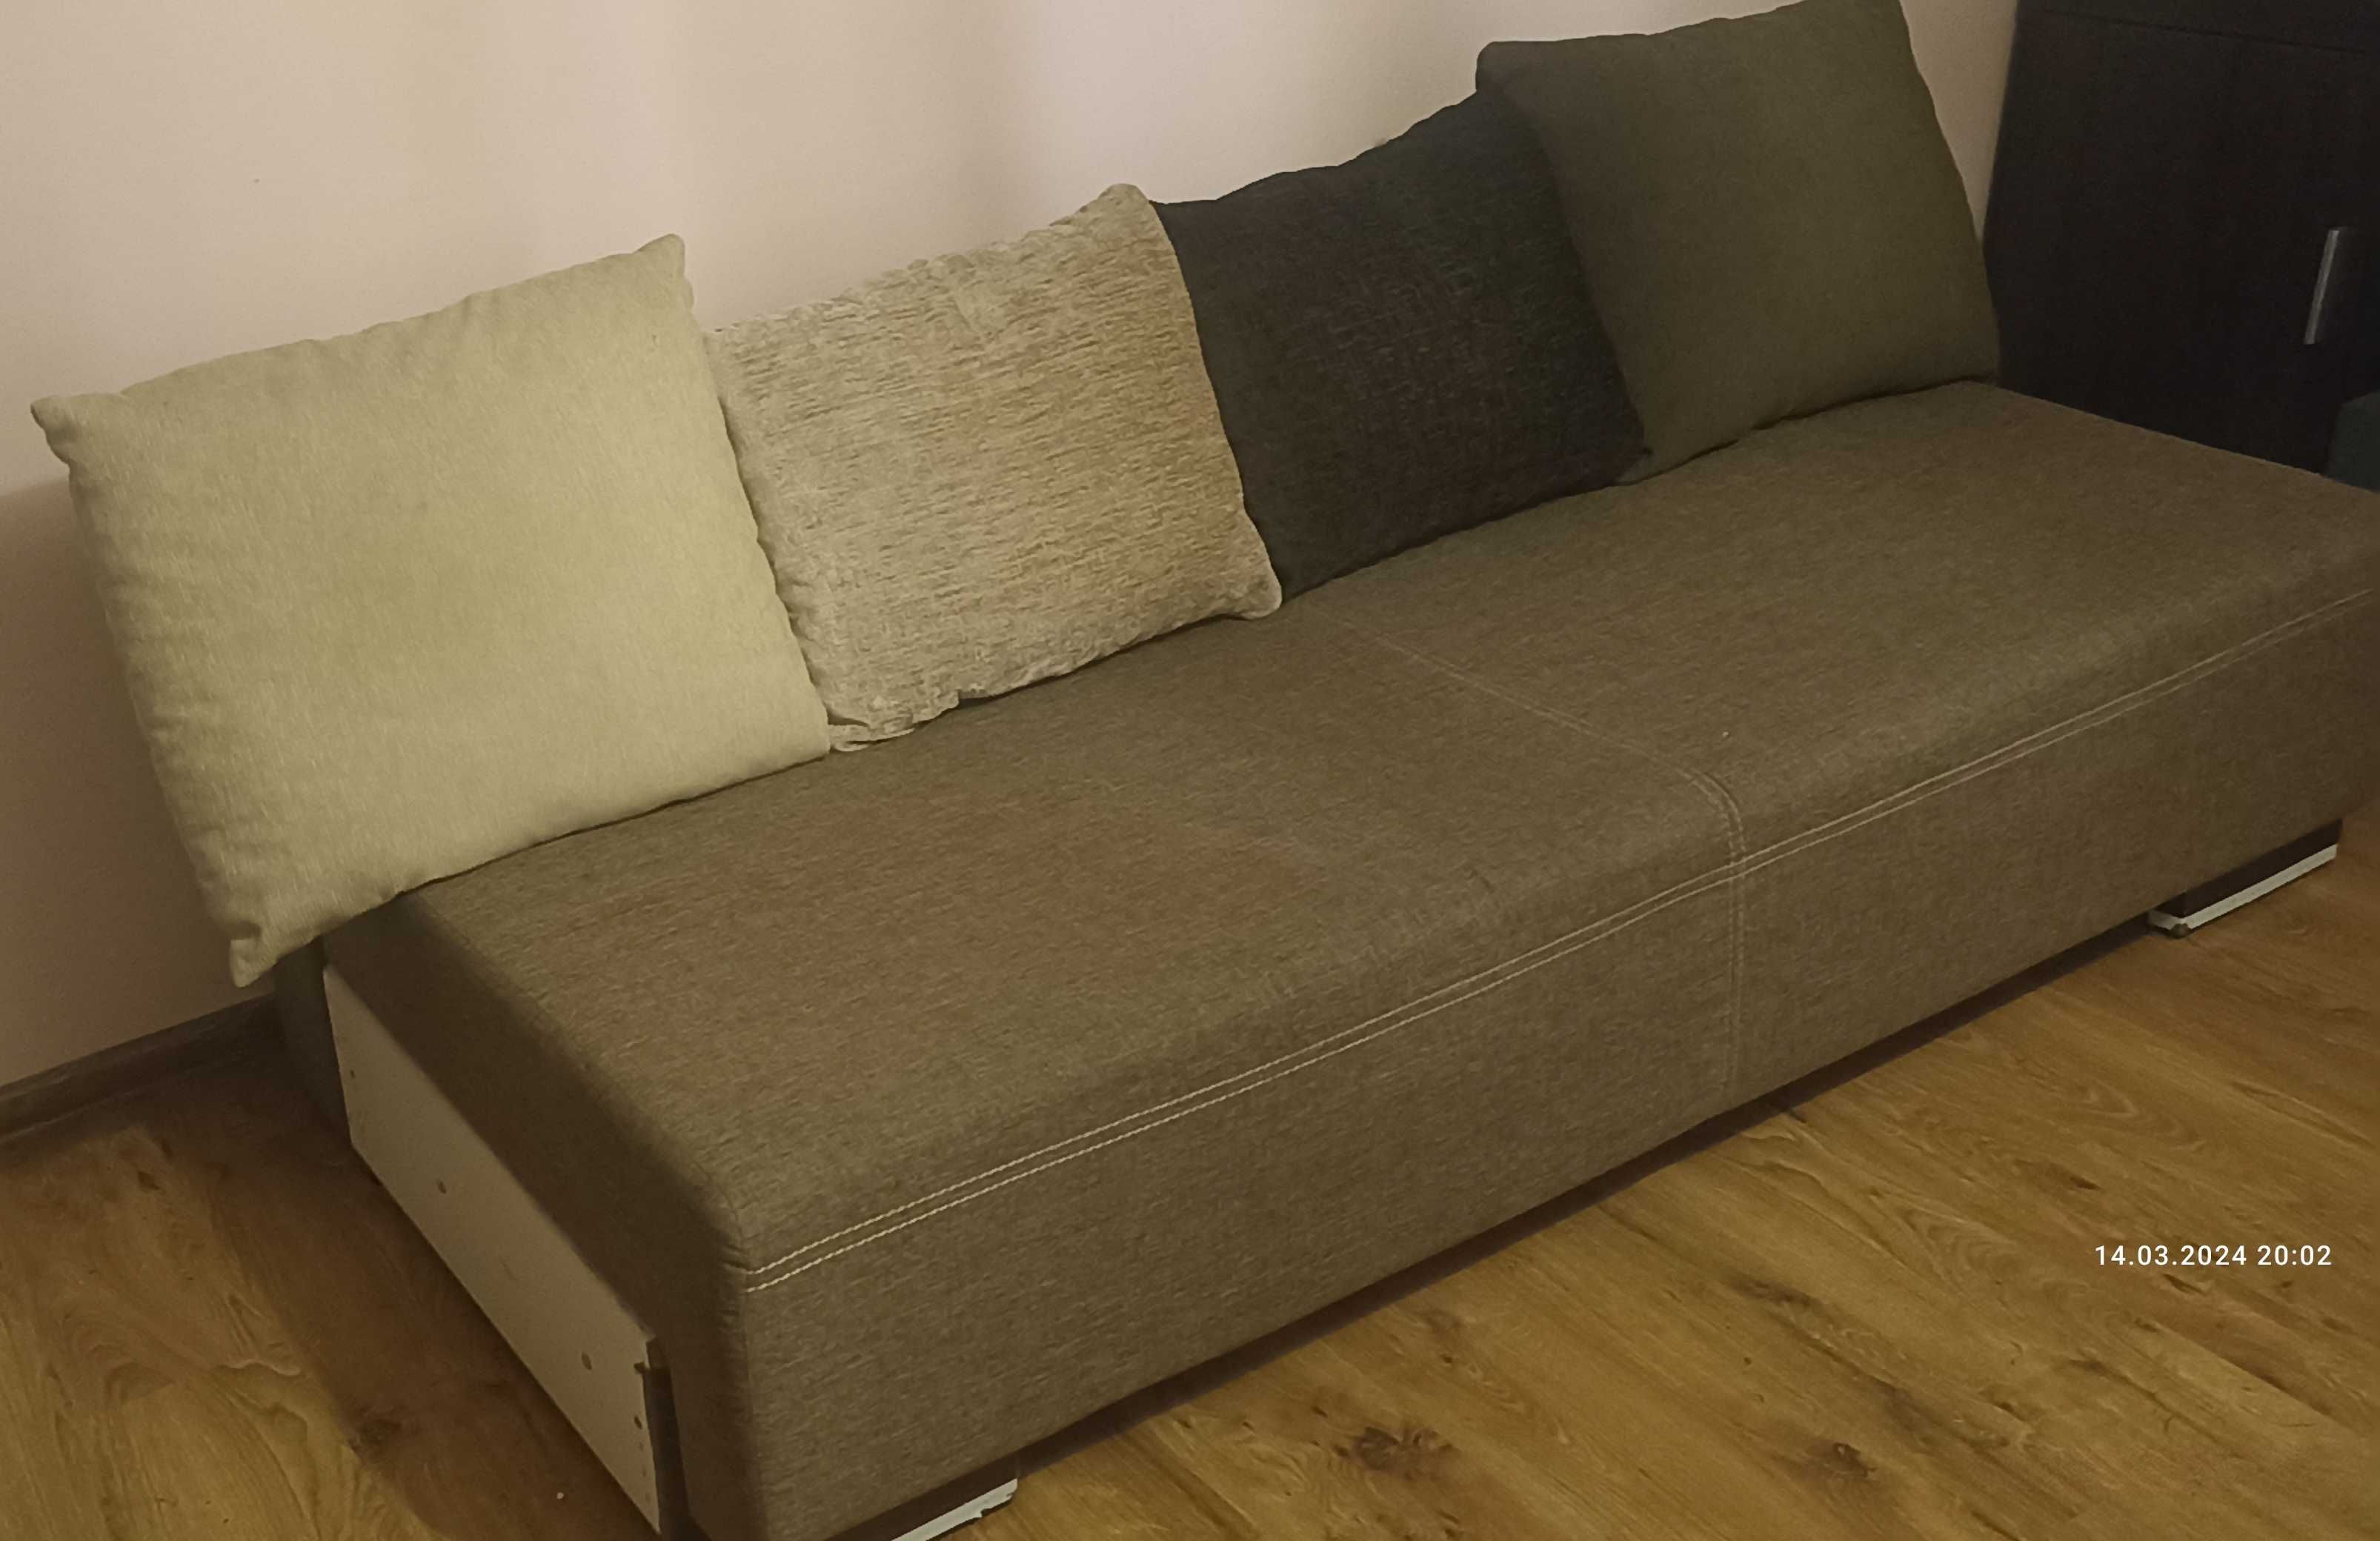 Sofa, kanapa, rozkładana 200 cm x 180 cm. Kolor beż.